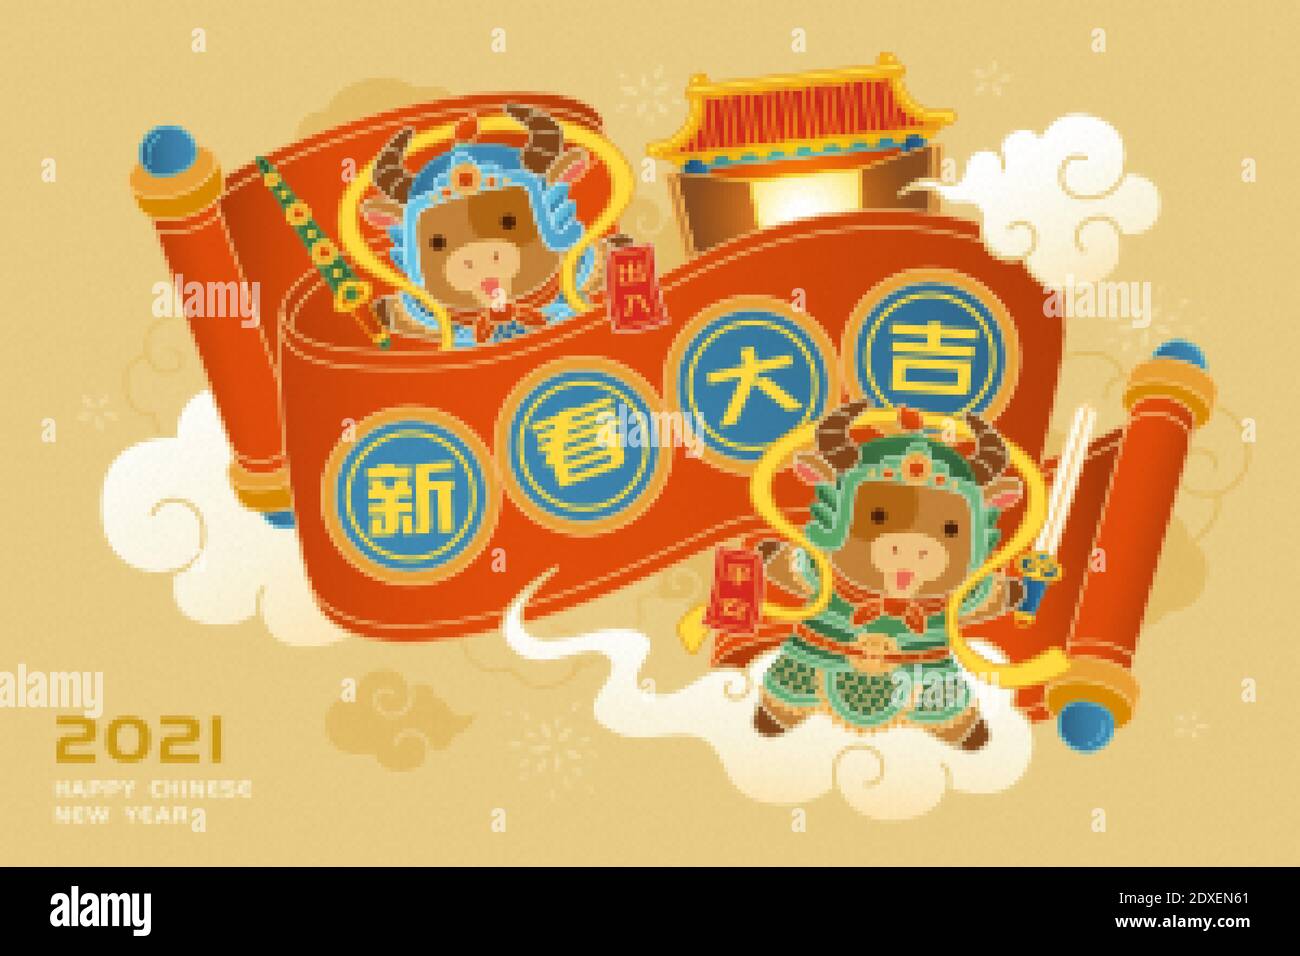 Schöne niedliche Tür Götter mit roten Banner mit chinesischen Worten: Wünschen Ihnen viel Glück und stellen Sie sicher, eine sichere Reise, wann immer Sie gehen Stock Vektor